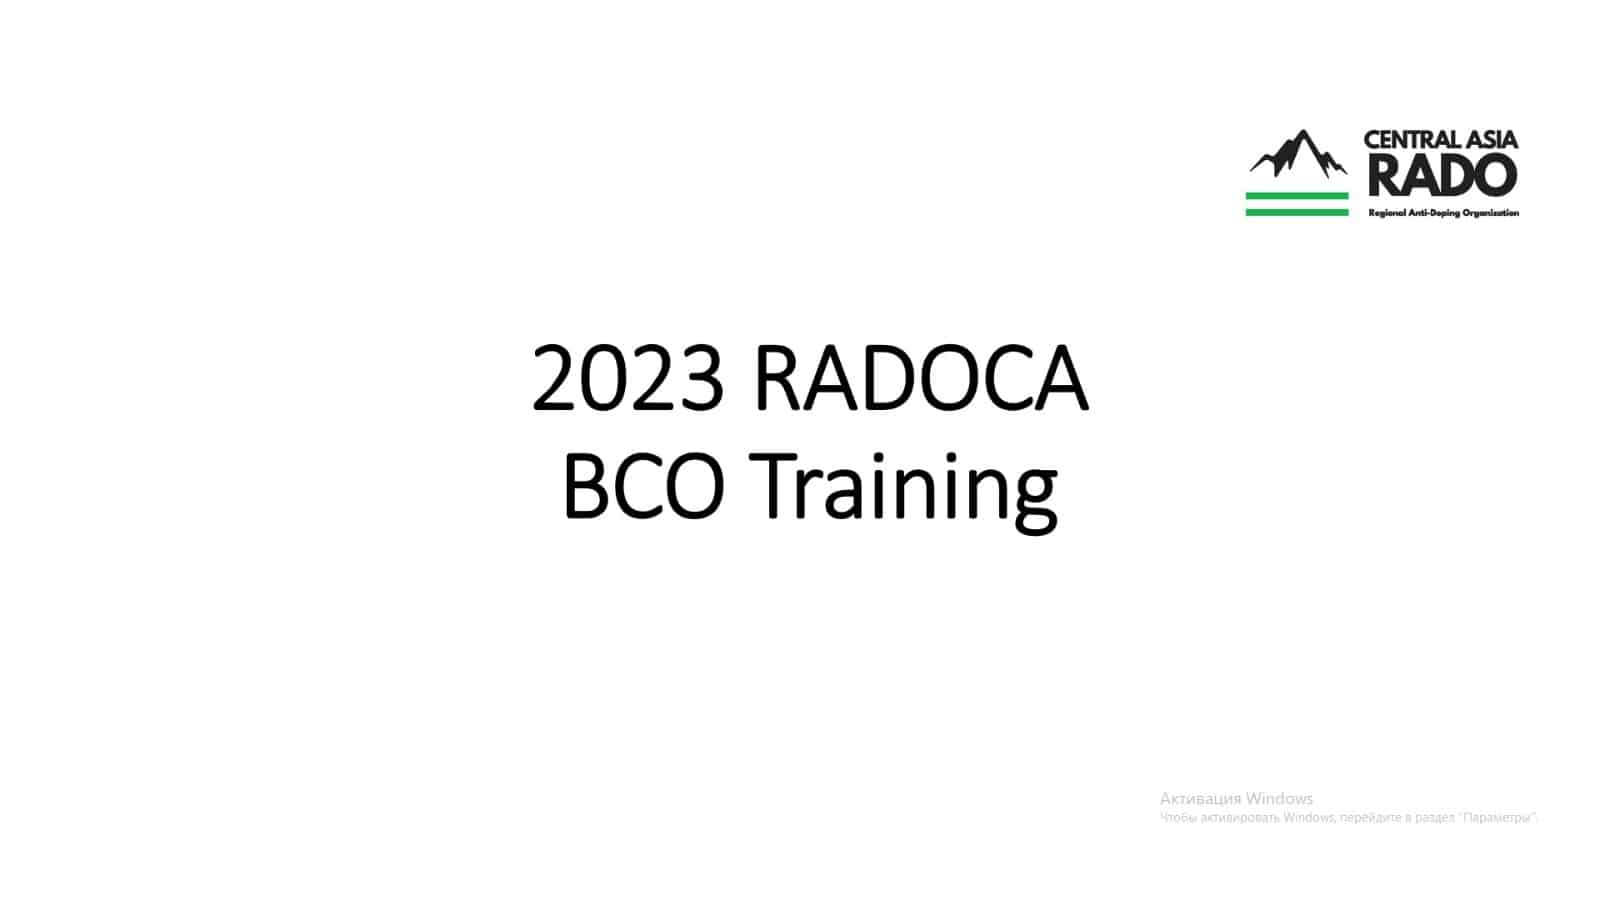 RADOCAреализовала программу обучения инспекторов по сбору крови (ИСК) 2023 года